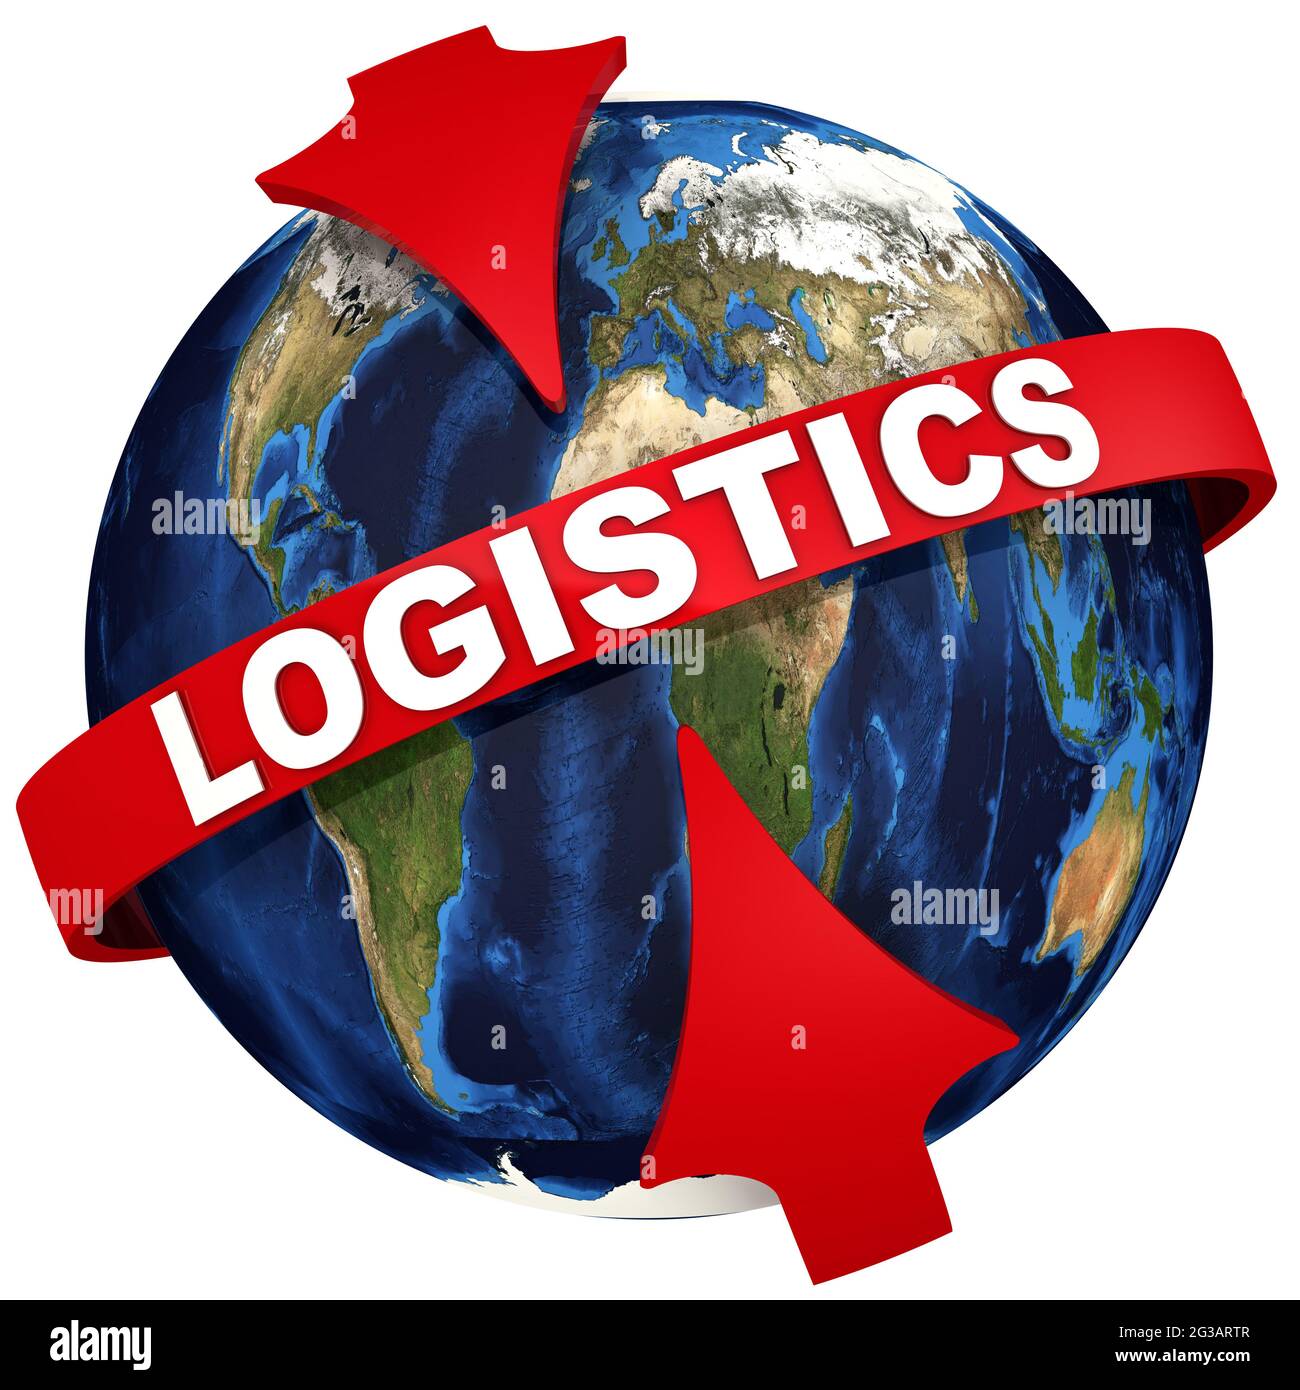 Logistique. Les flèches rouges mettent l'accent sur la LOGISTIQUE des inscriptions sur le fond du globe. Illustration 3D Banque D'Images